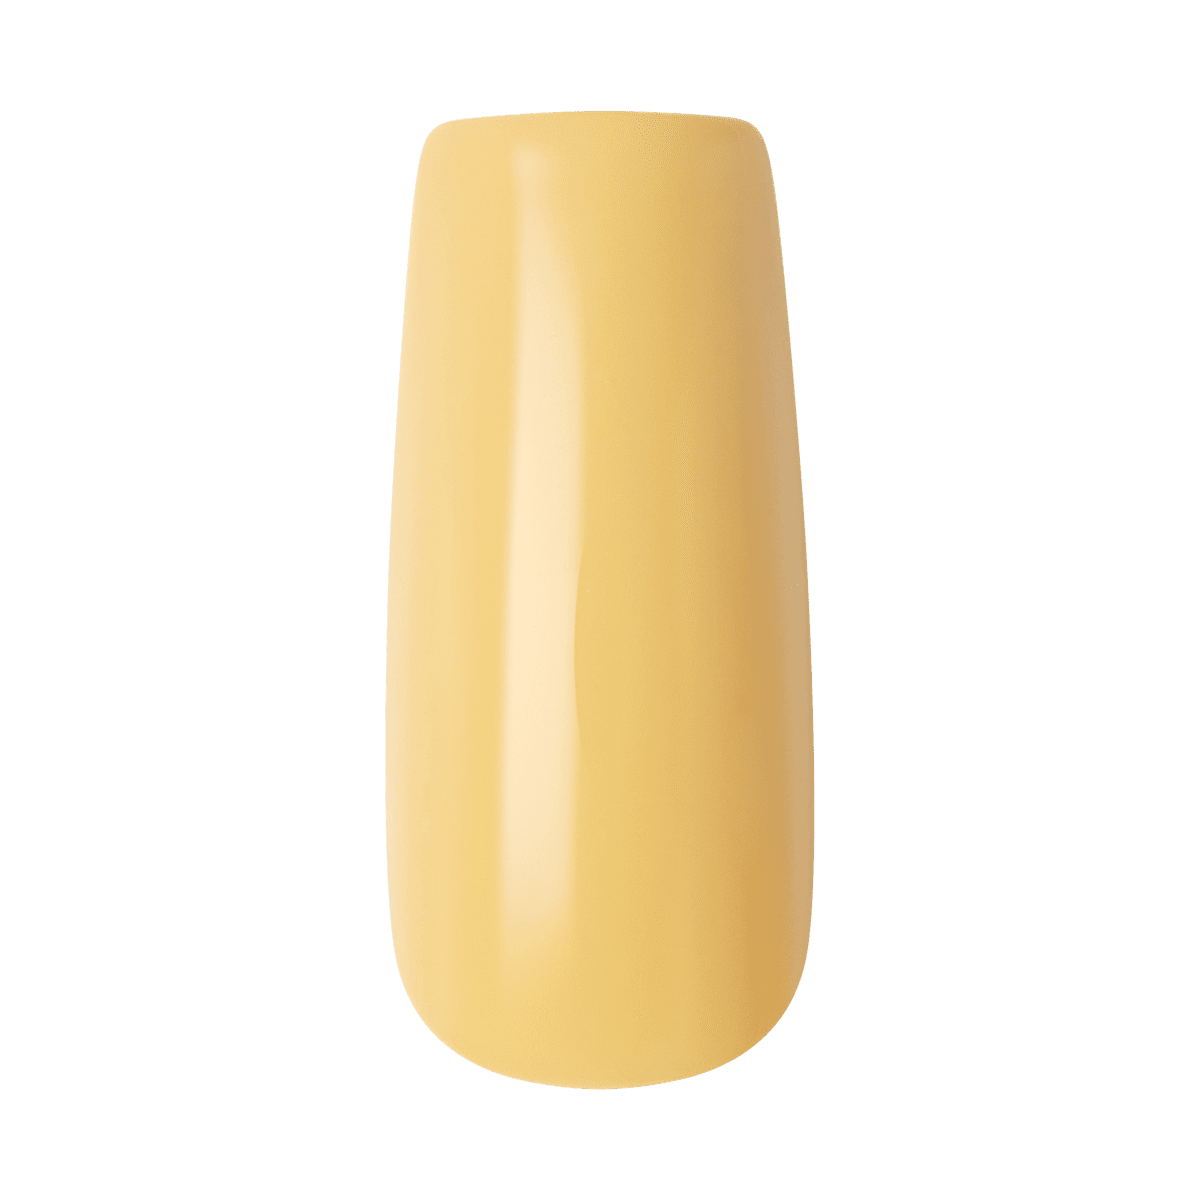 KISS Gel Fantasy Sculpted Nails - Nacho Cheese